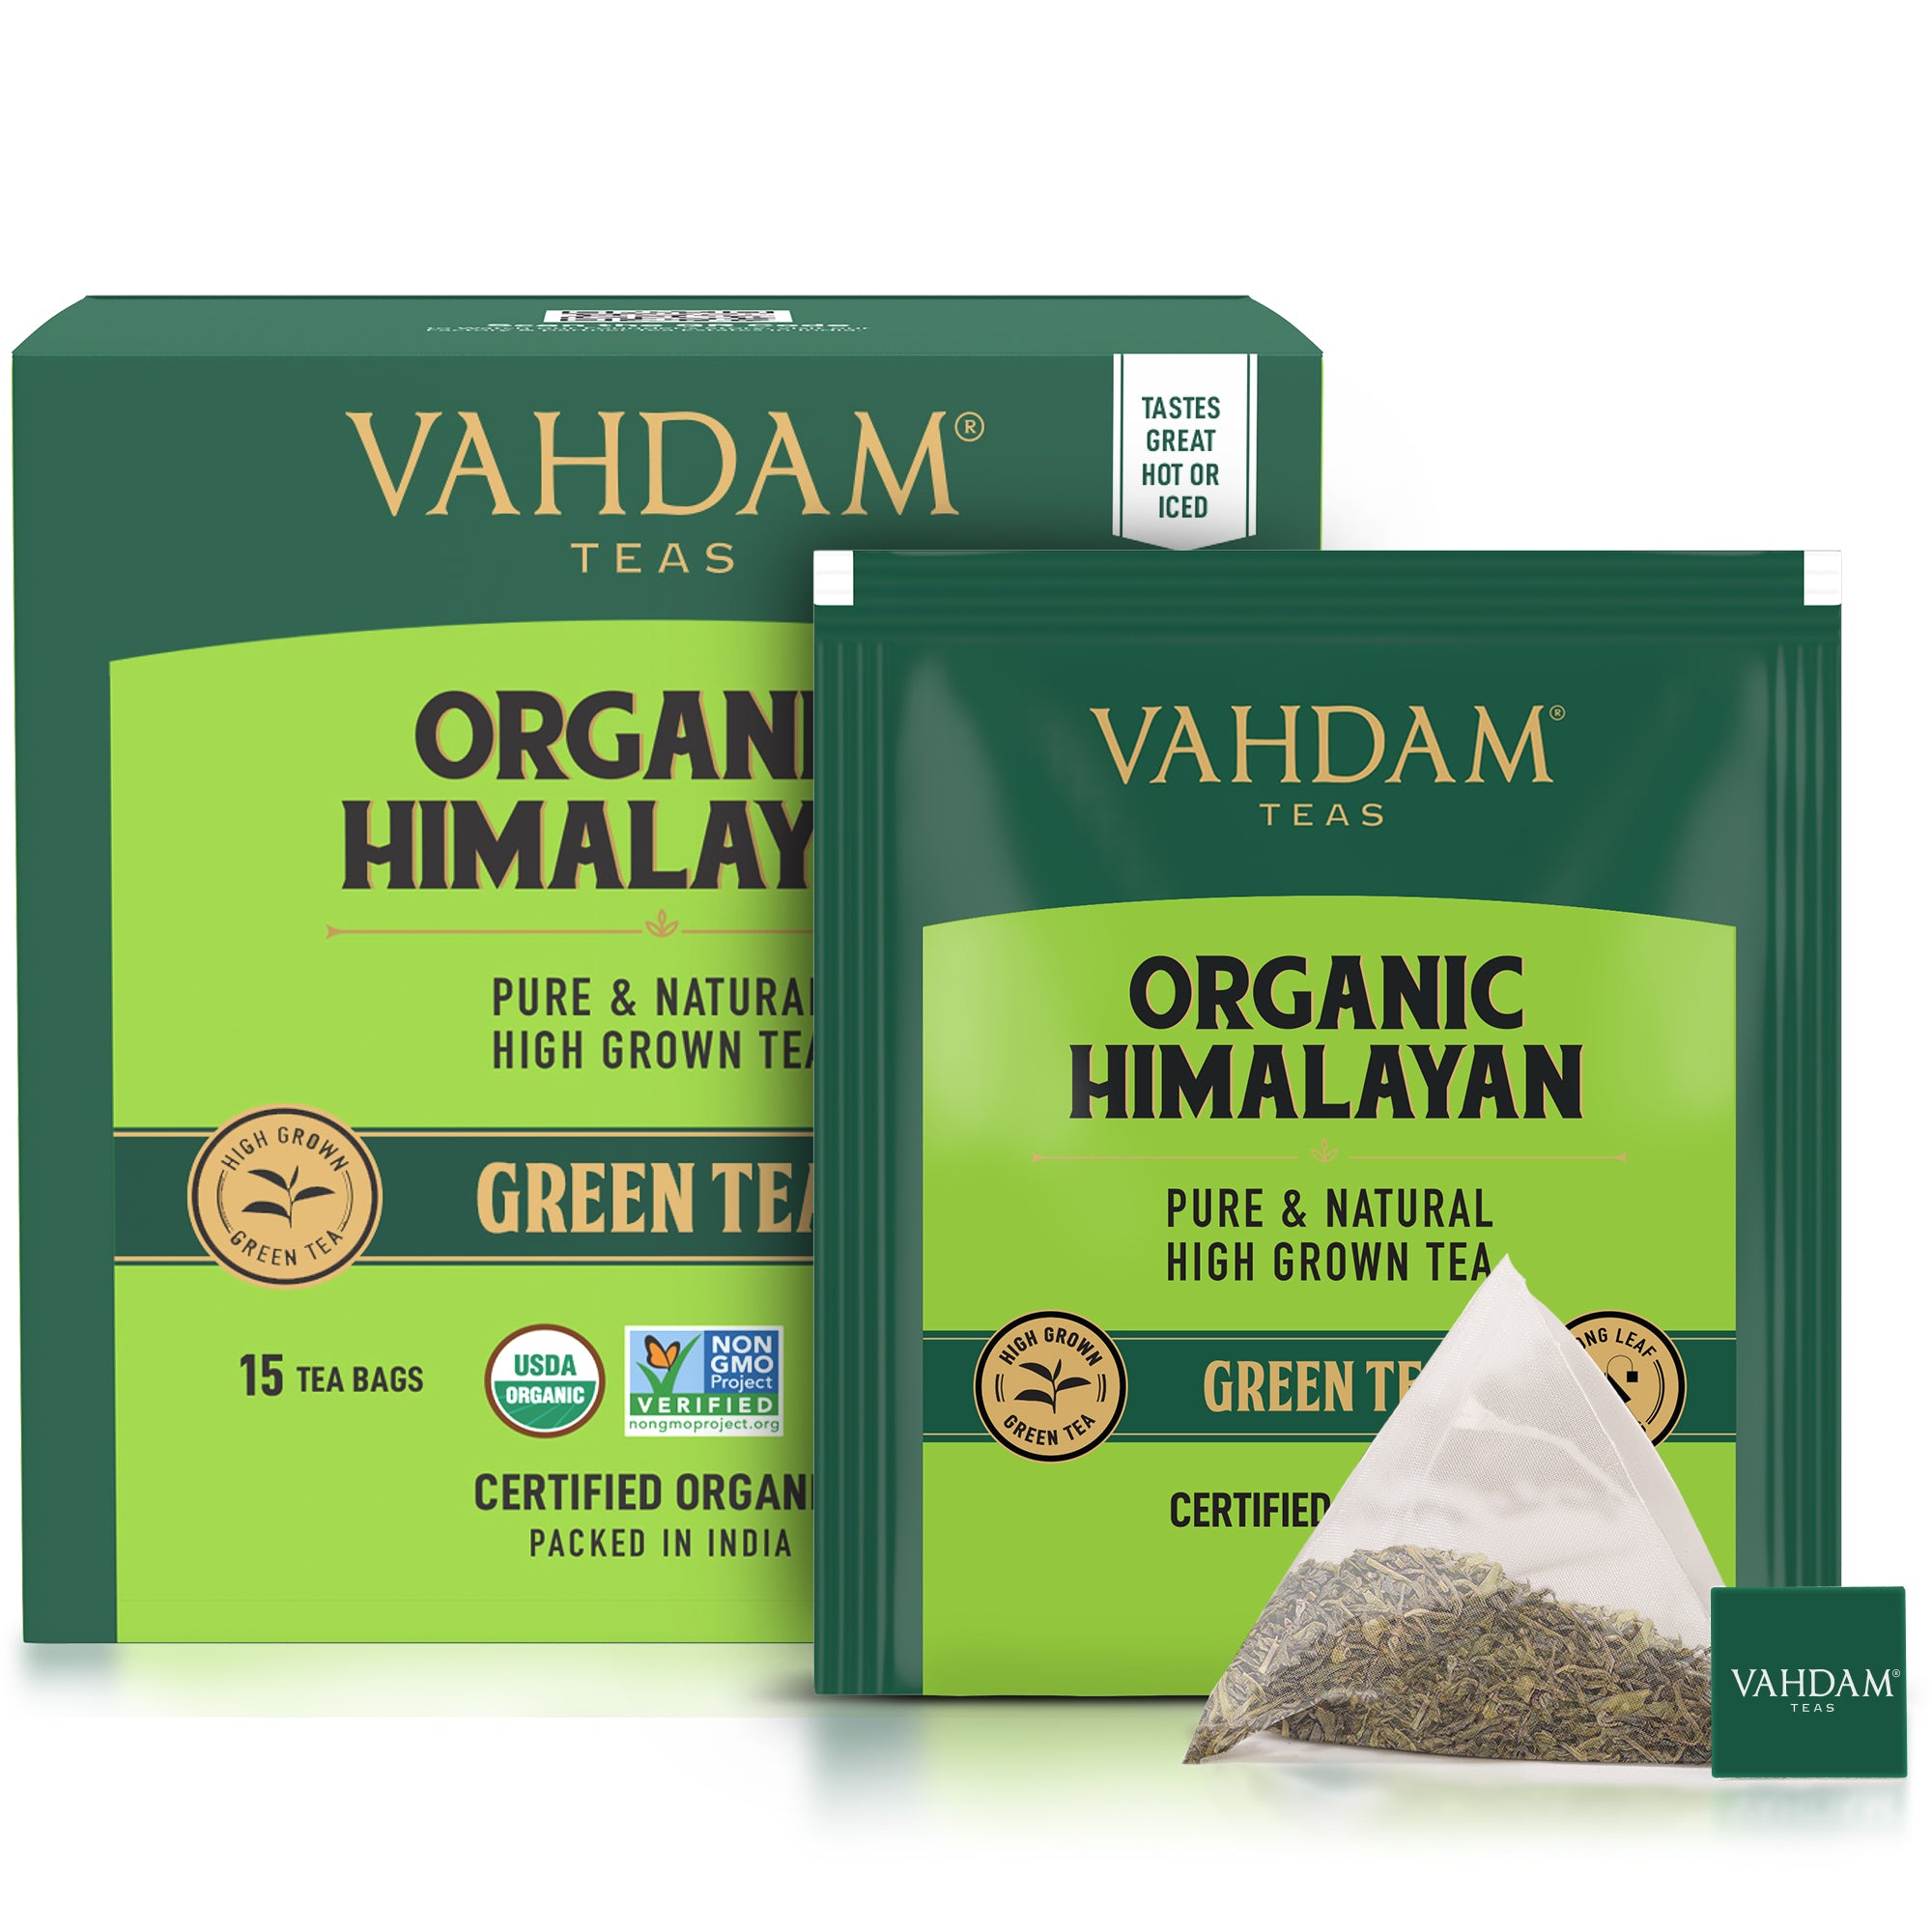 Vahdam, Imperial Himalayan White Tea 15 Tea Bags, Long Leaf Pyramid WH